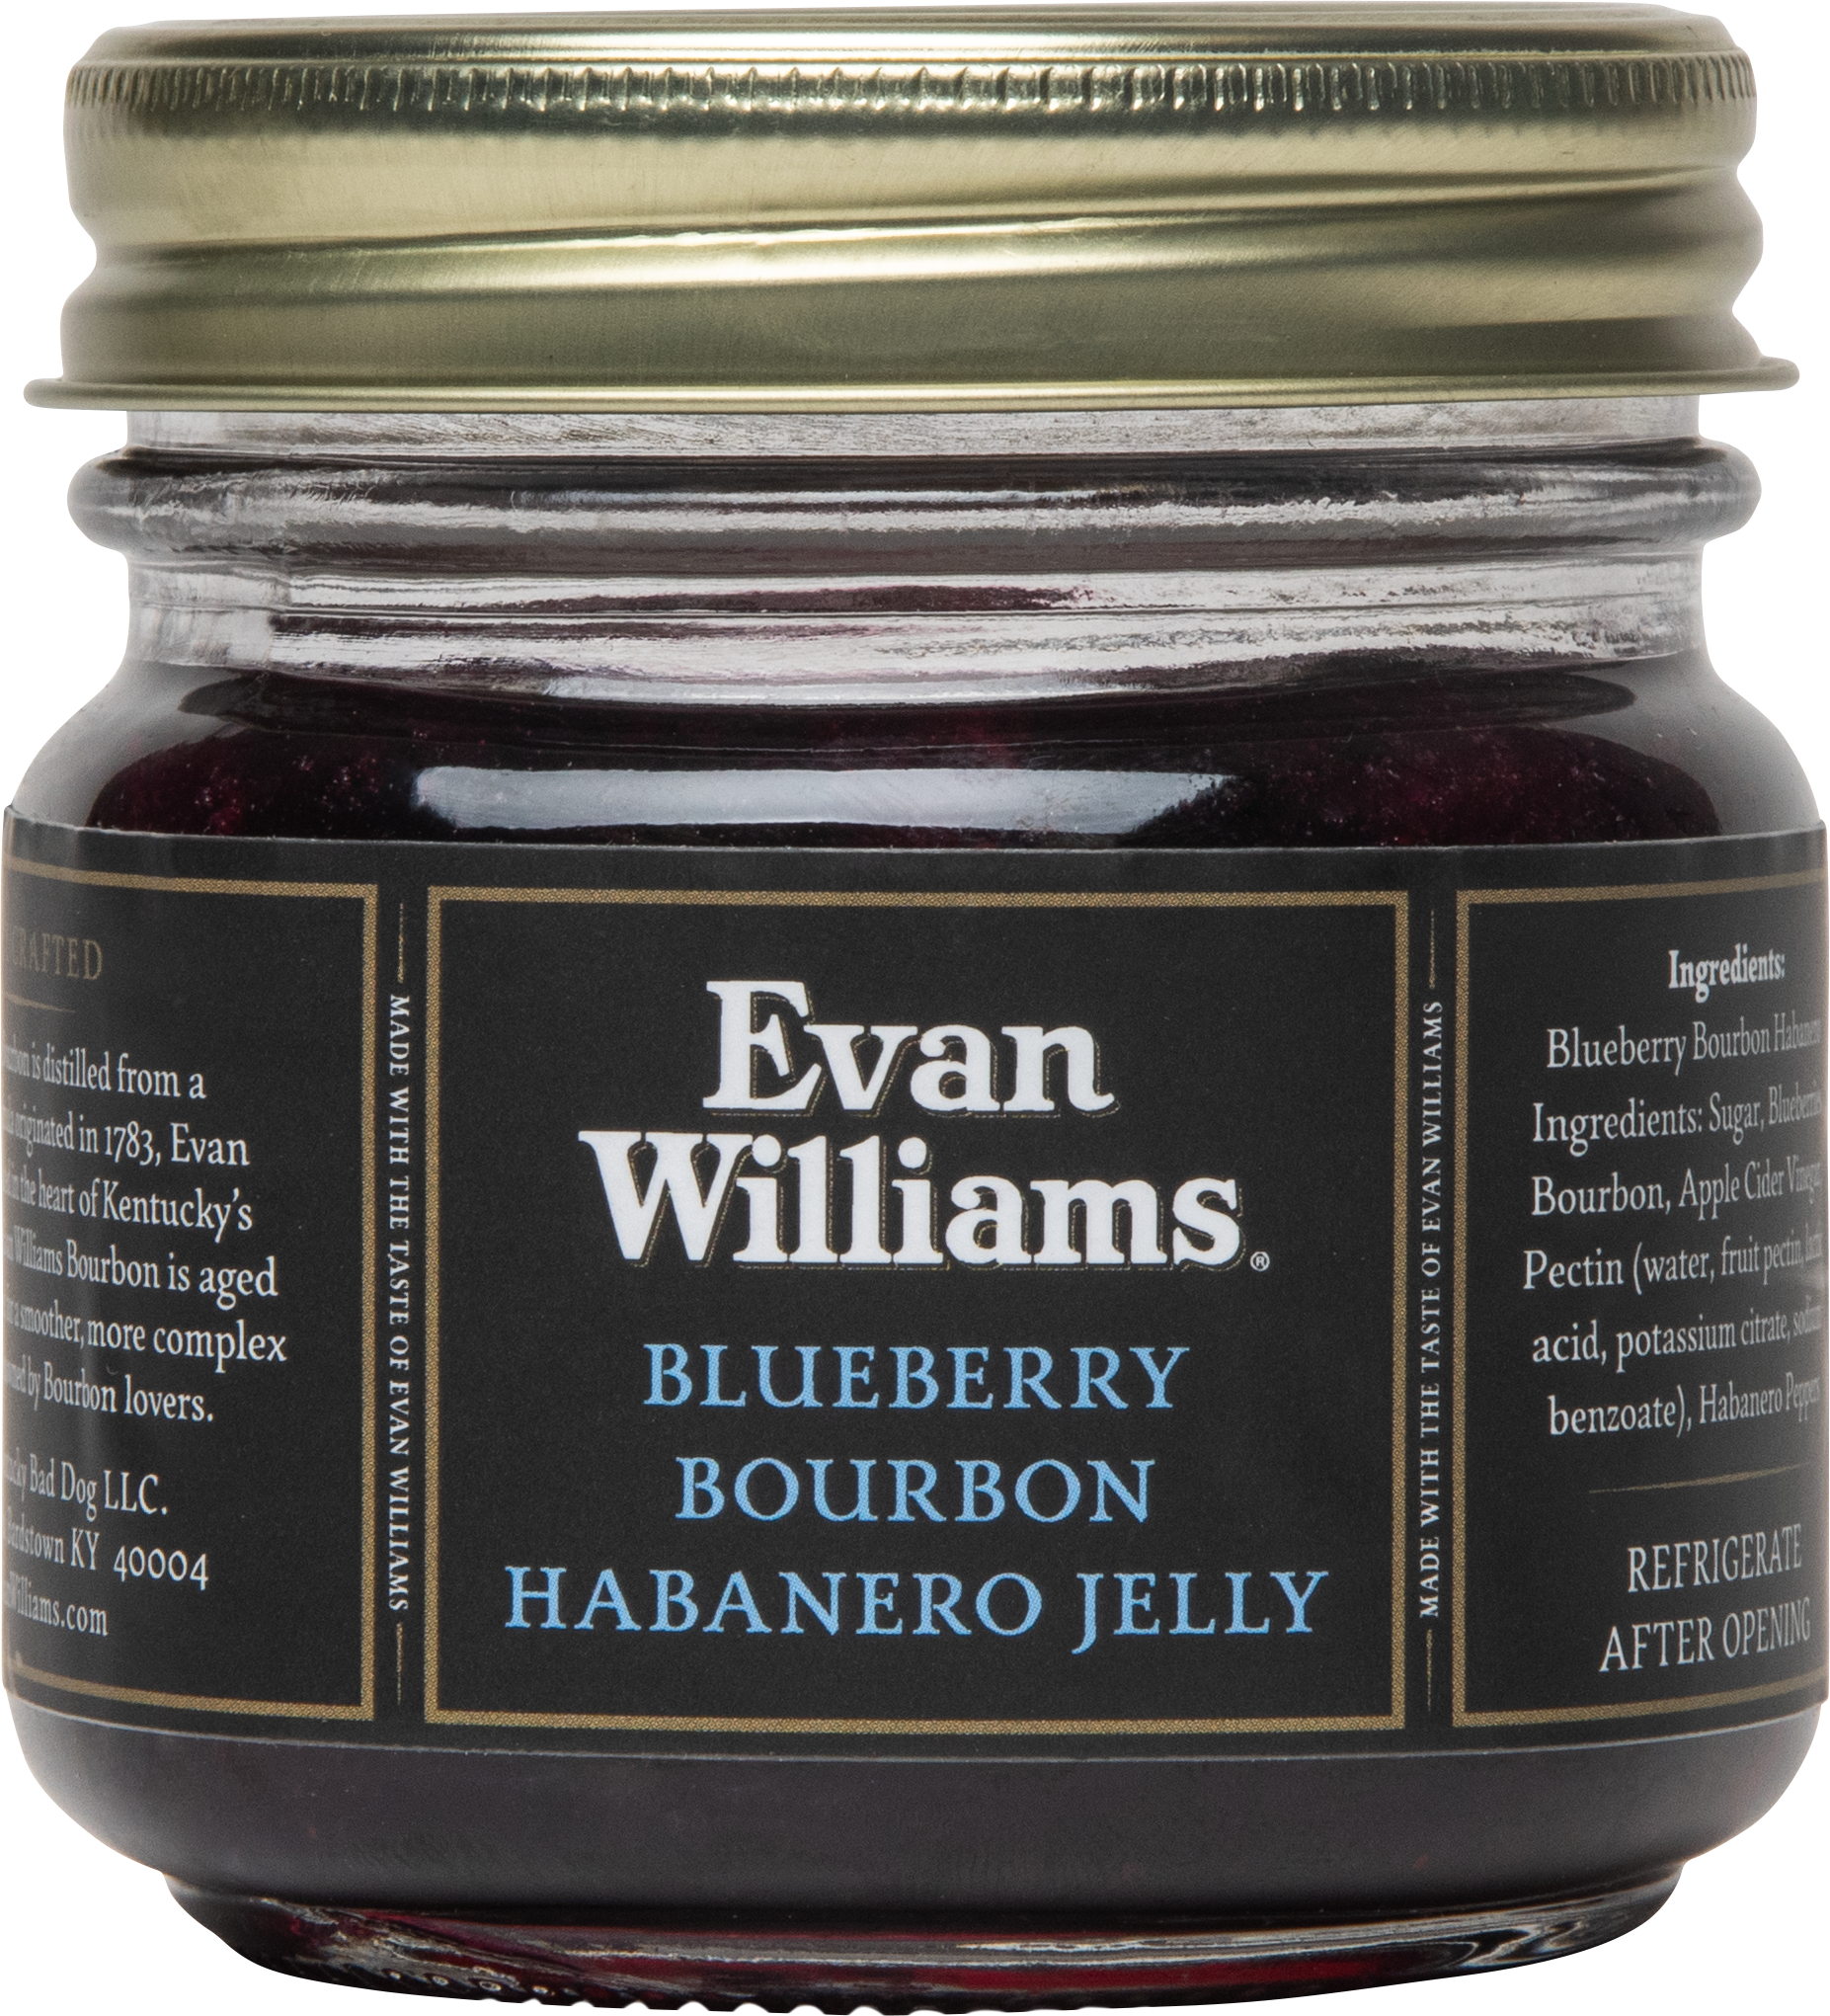 Blueberry Bourbon Habanero Jelly